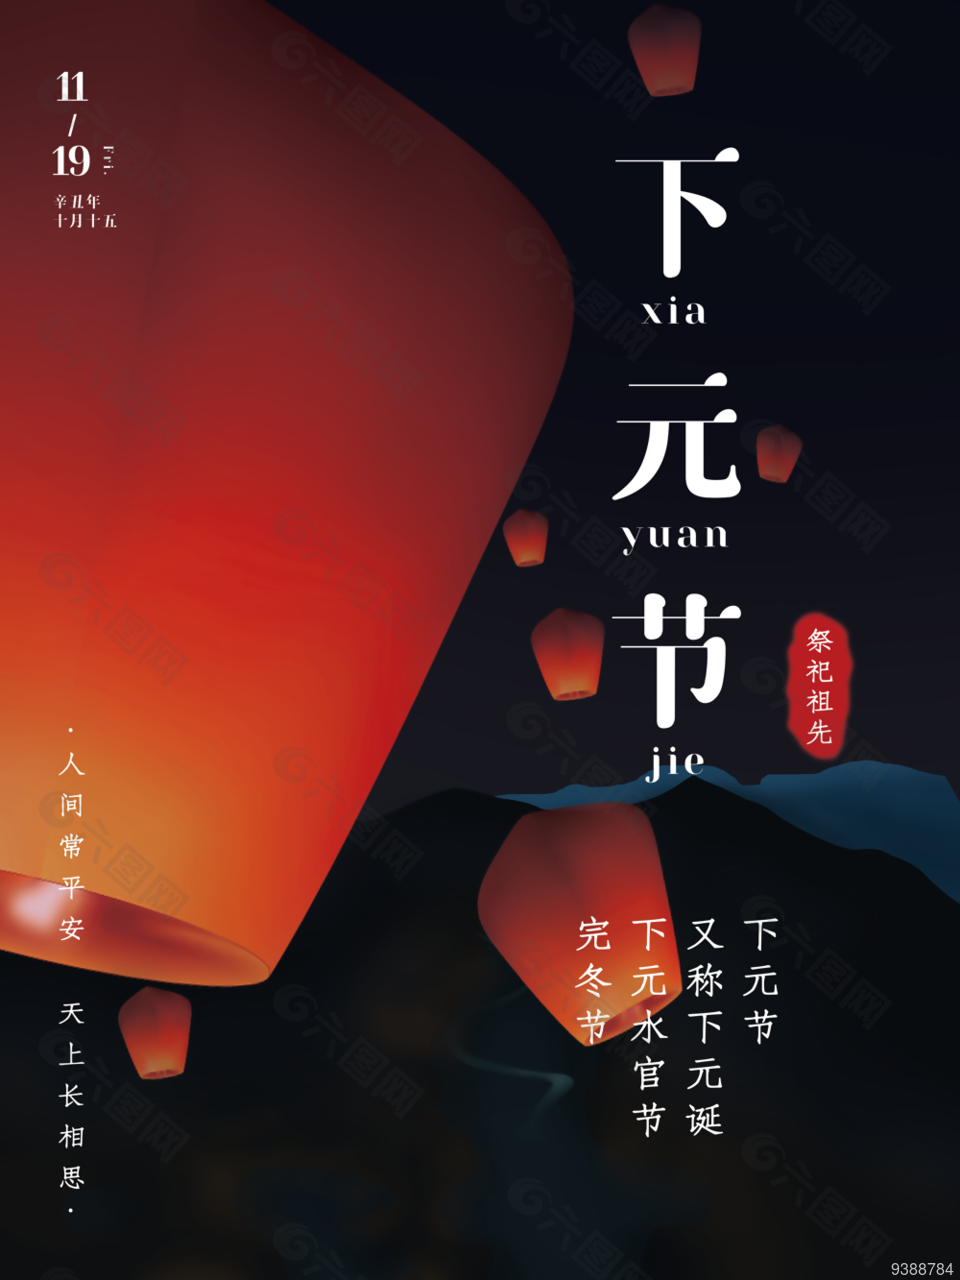 下元节节日宣传海报下载